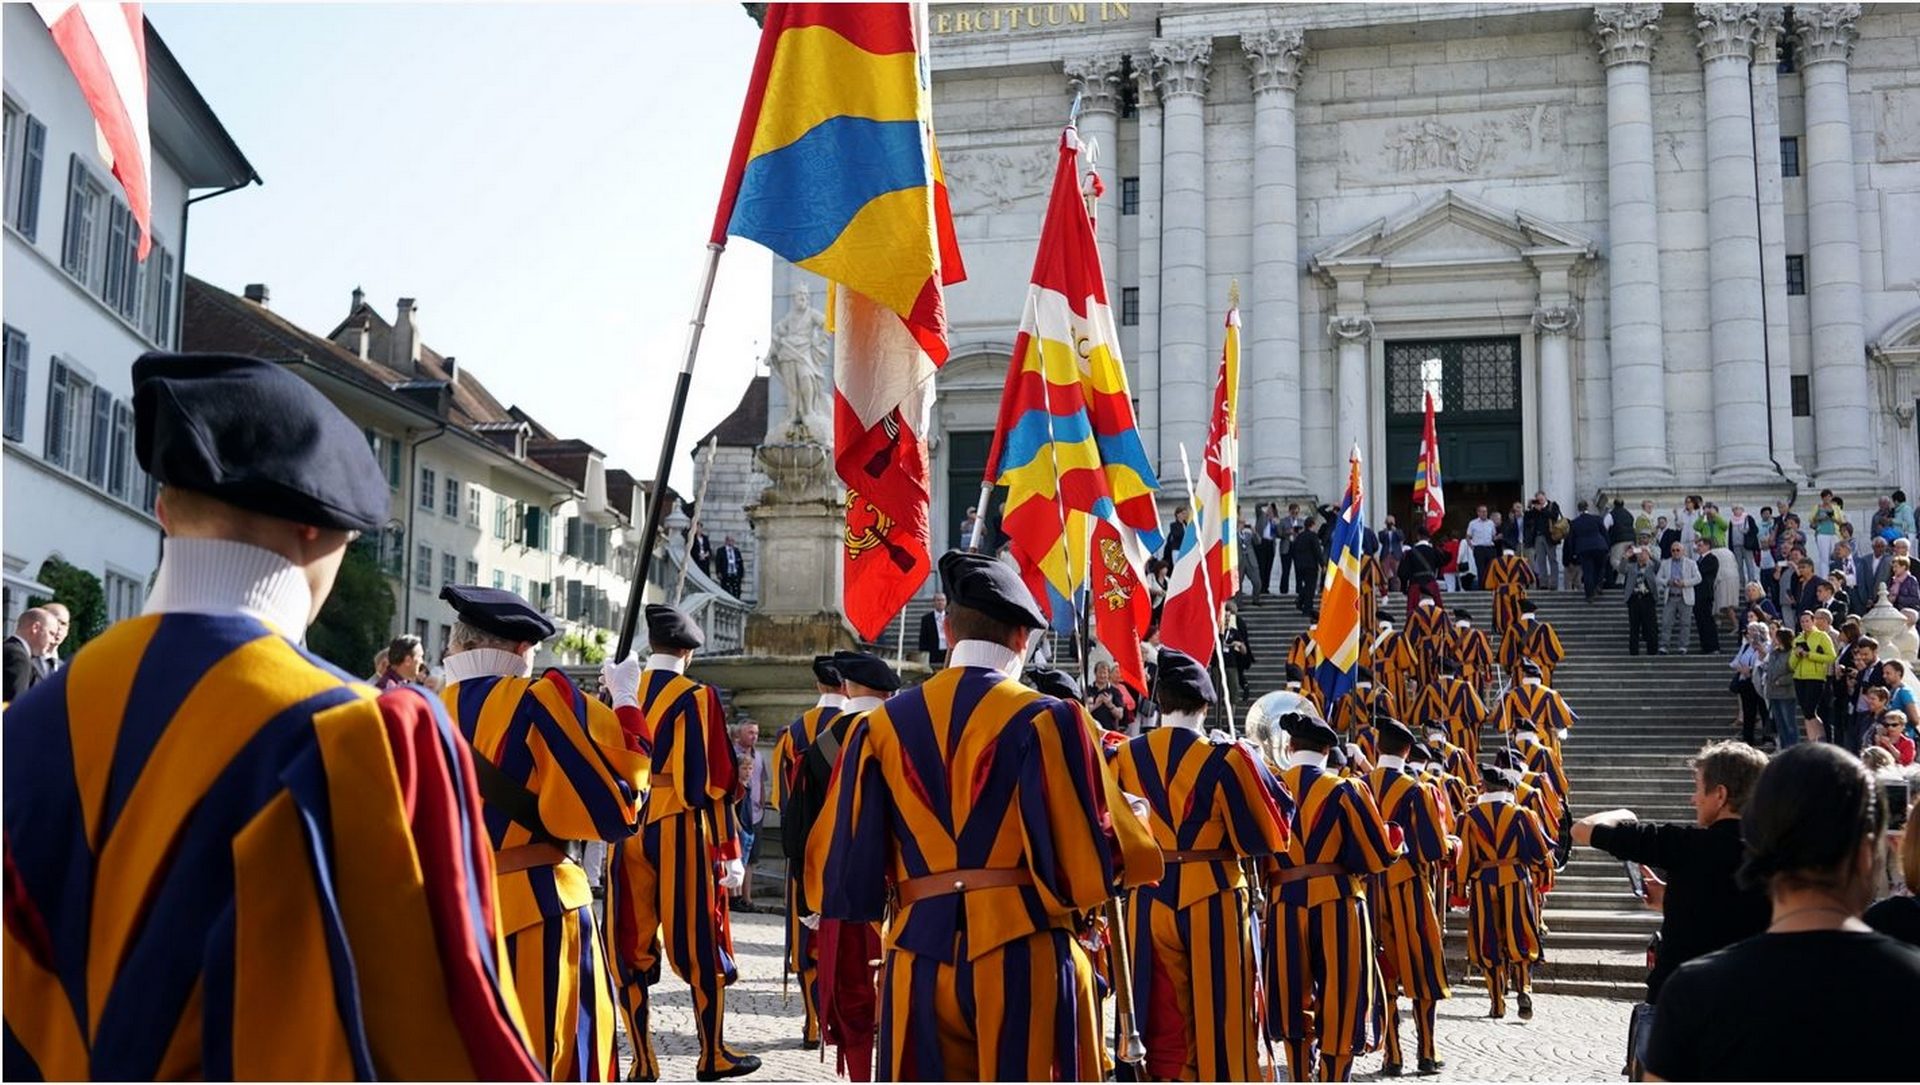 Les Gardes suisses entrent dans la cathédrale de Soleure (photo Vera Rütimann)